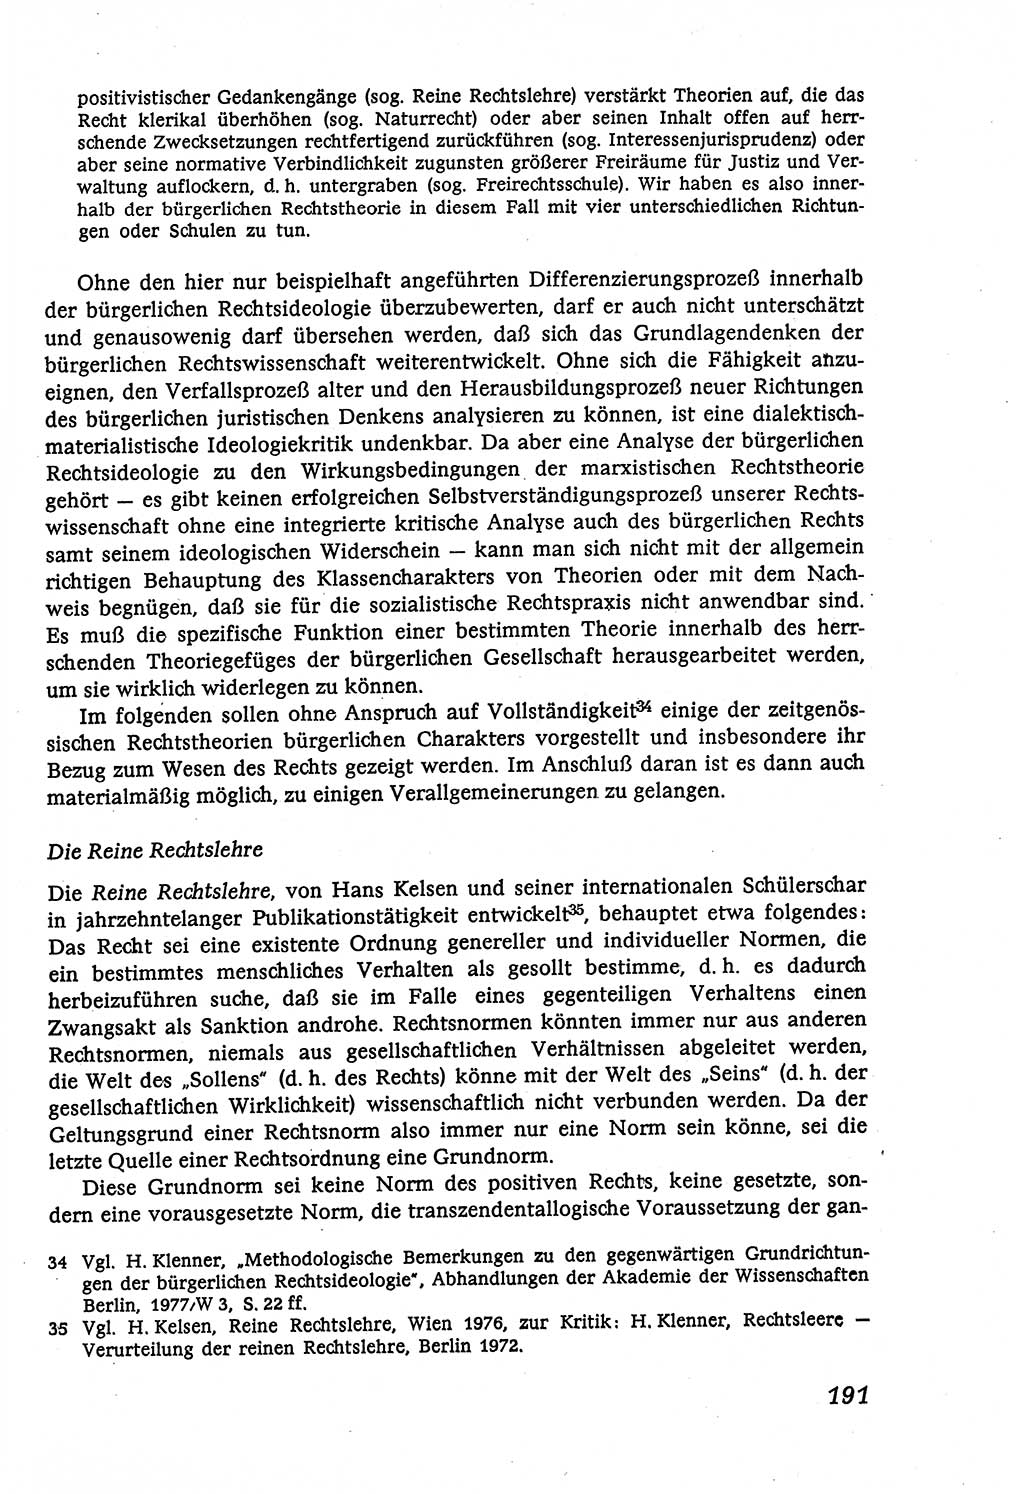 Marxistisch-leninistische (ML) Staats- und Rechtstheorie [Deutsche Demokratische Republik (DDR)], Lehrbuch 1980, Seite 191 (ML St.-R.-Th. DDR Lb. 1980, S. 191)